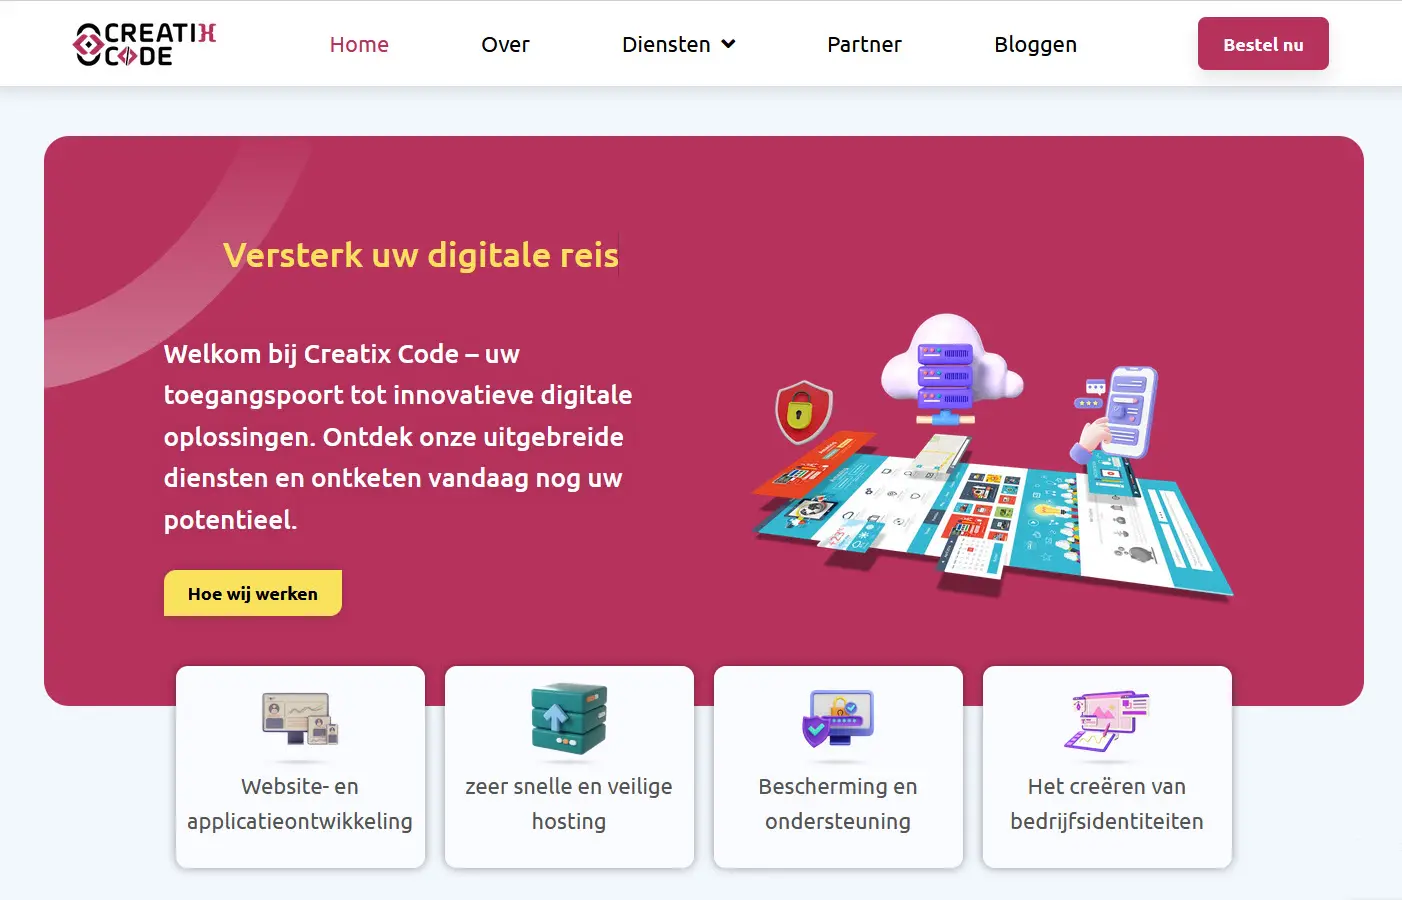 الصفحة الرسمية لشركة كريتكس كود creatix code بهولندا